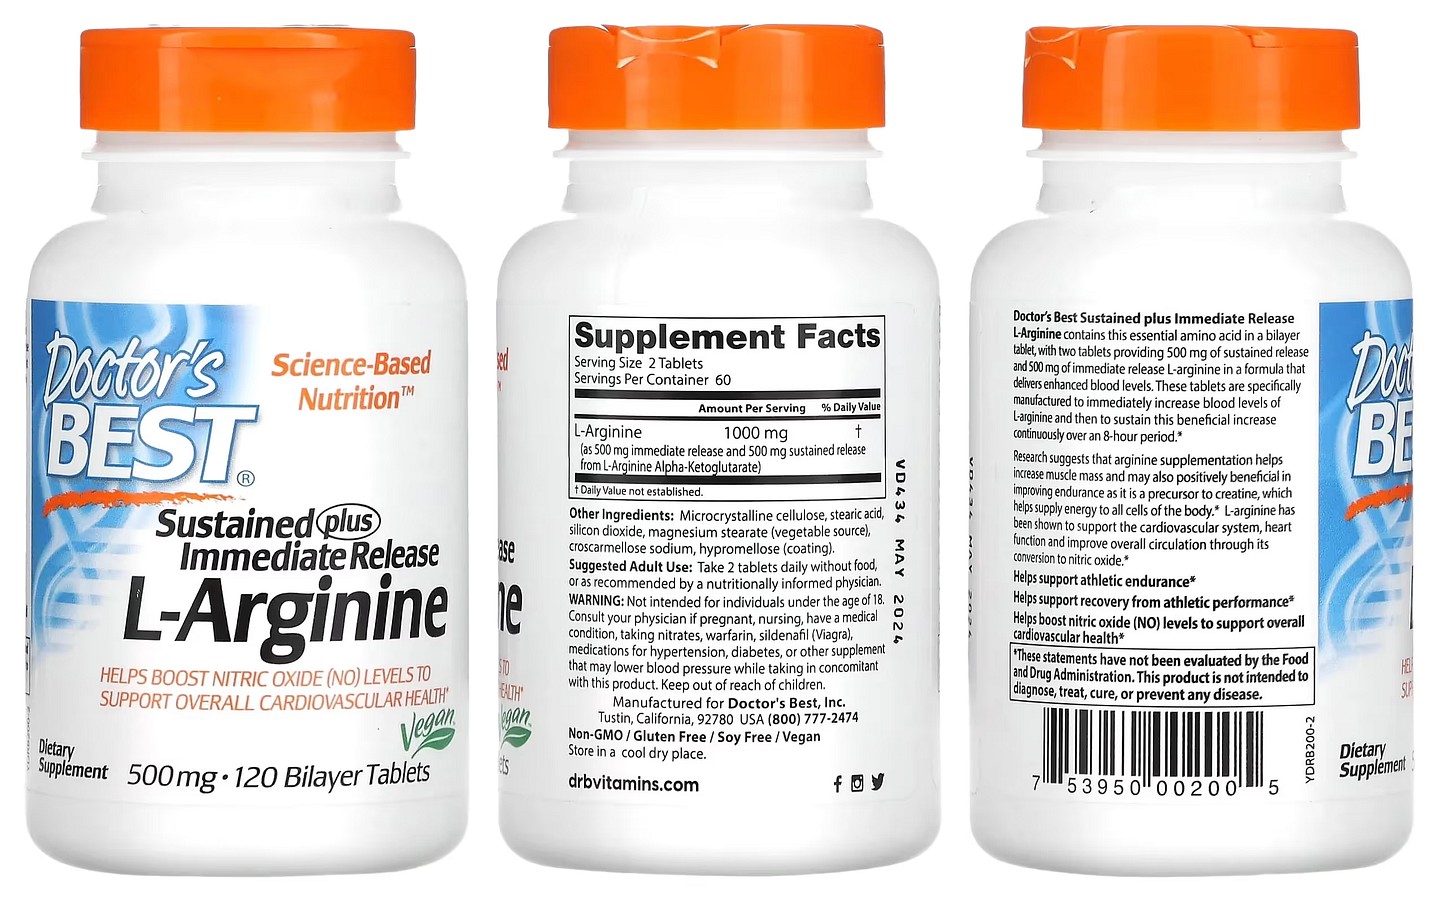 Doctor's Best, Sustained Plus Immediate Release L-Arginine packaging